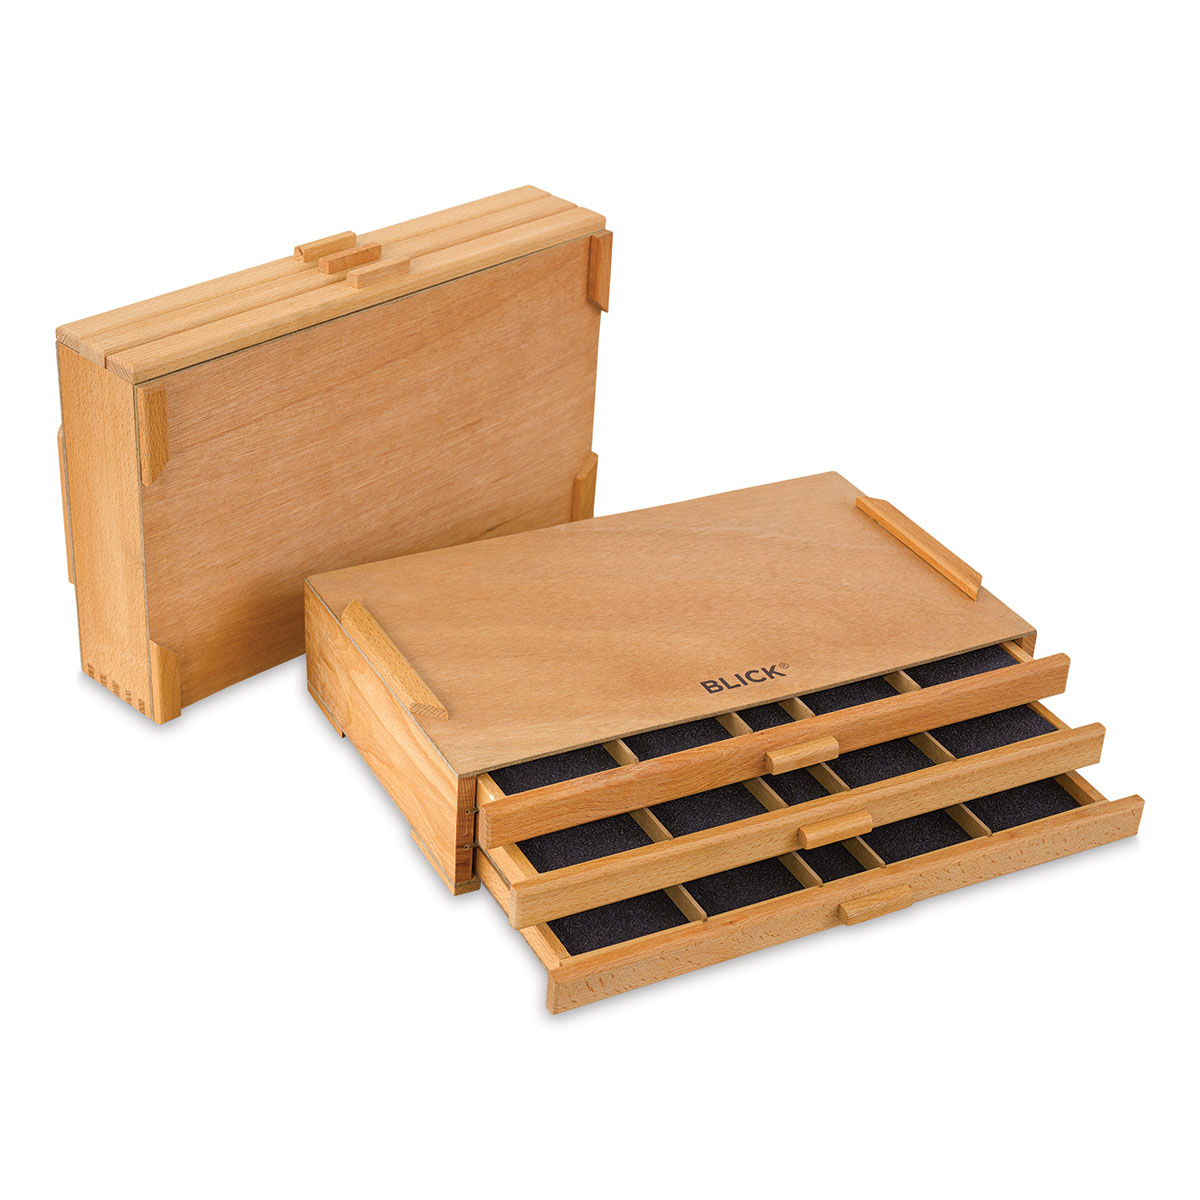 Blick Wooden Drawer Storage Box